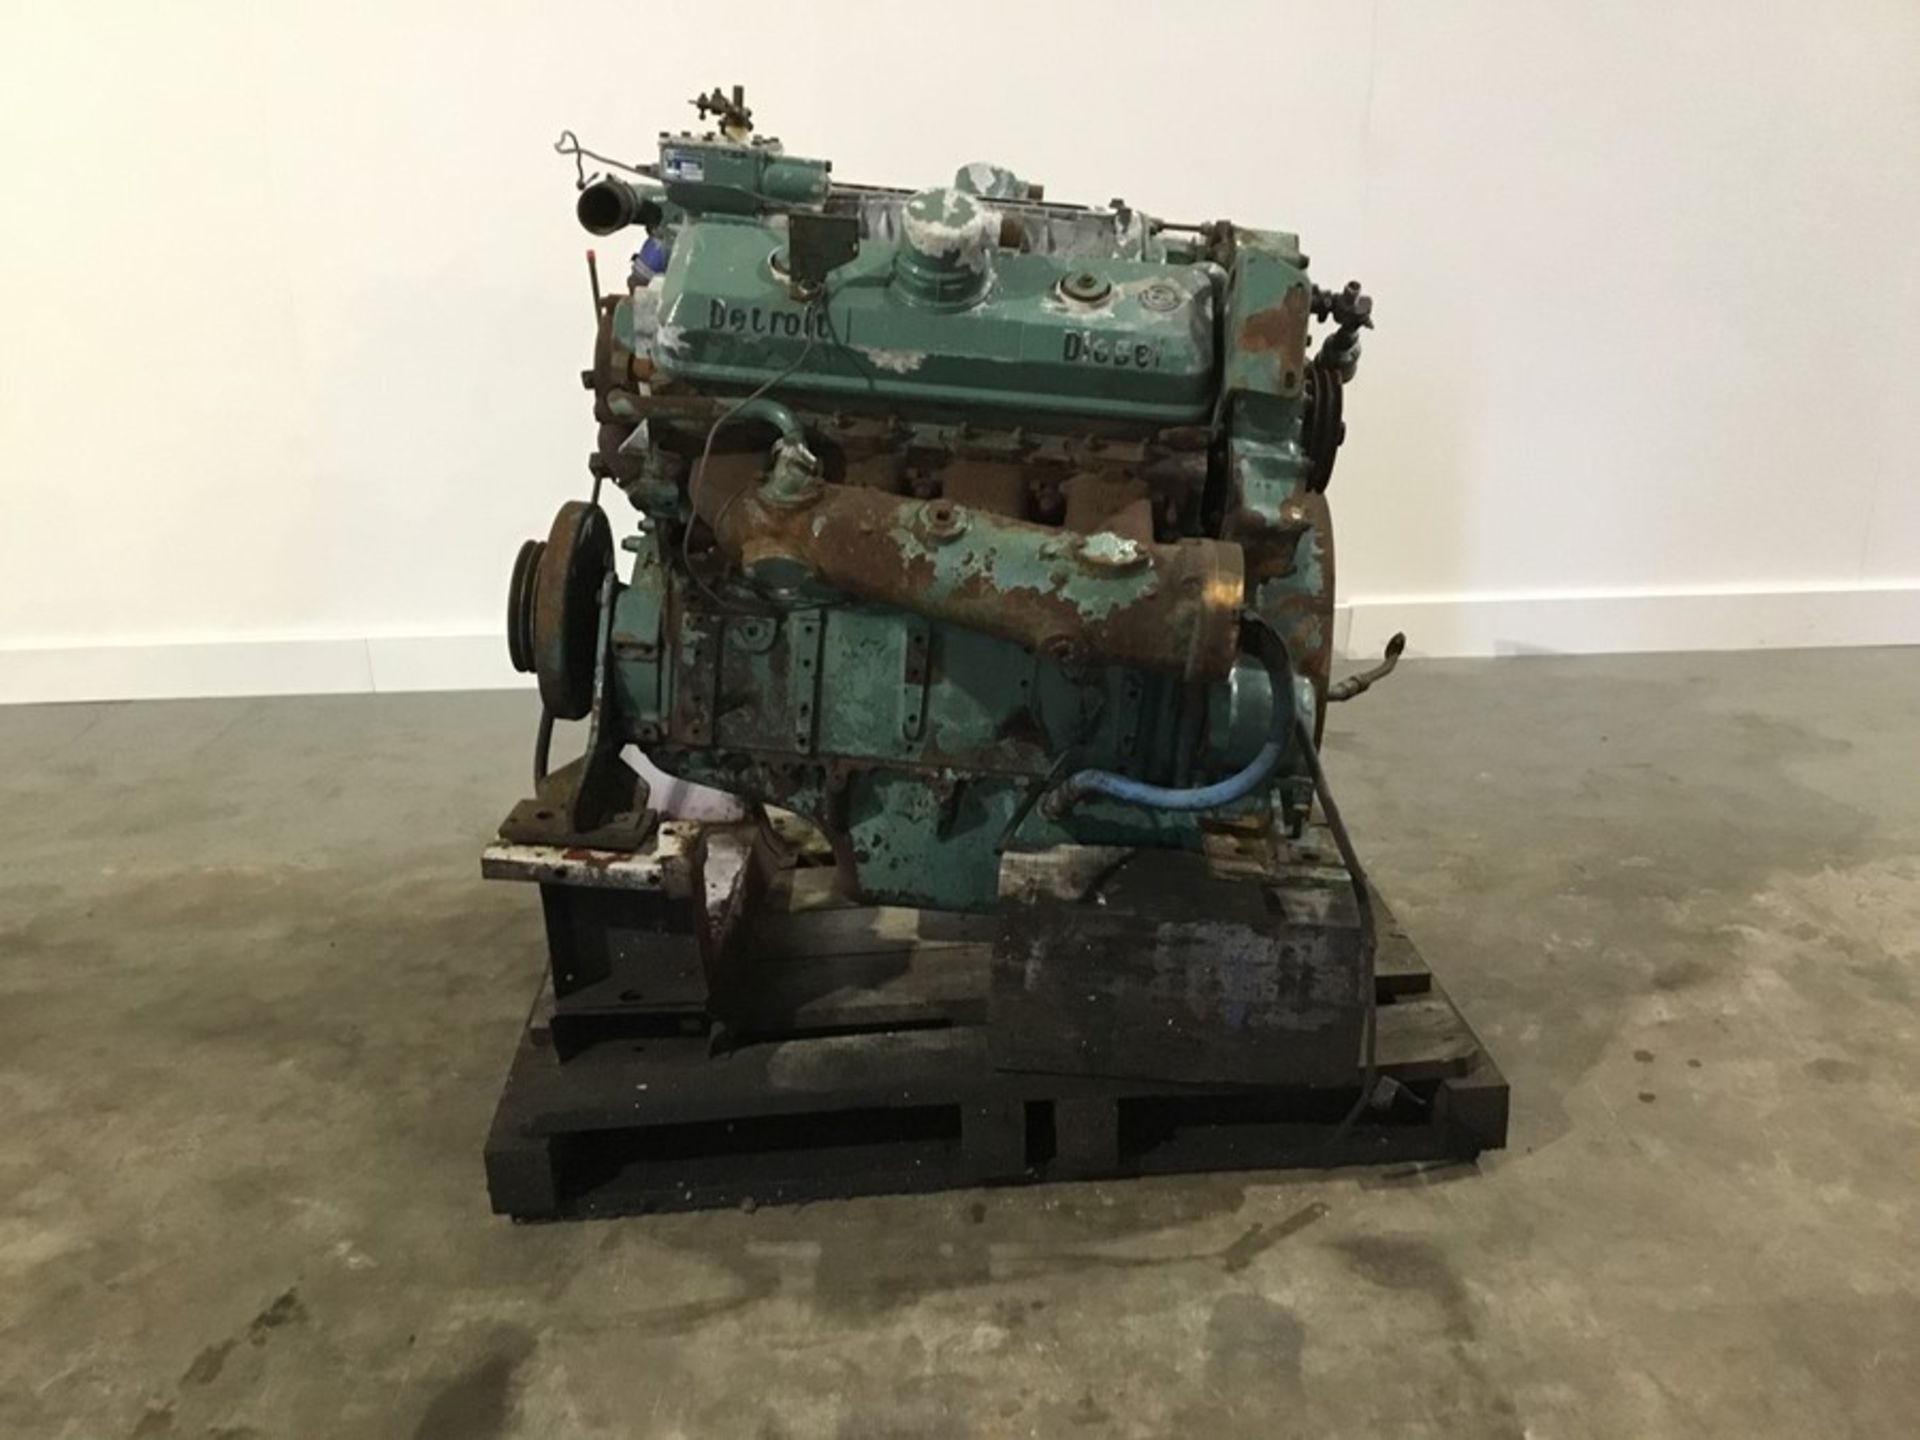 Detroit 8V71 Diesel Engine: Detroit 8v71 v8 Non Turbo Serial Number: 8FW000229*8082-3301 used